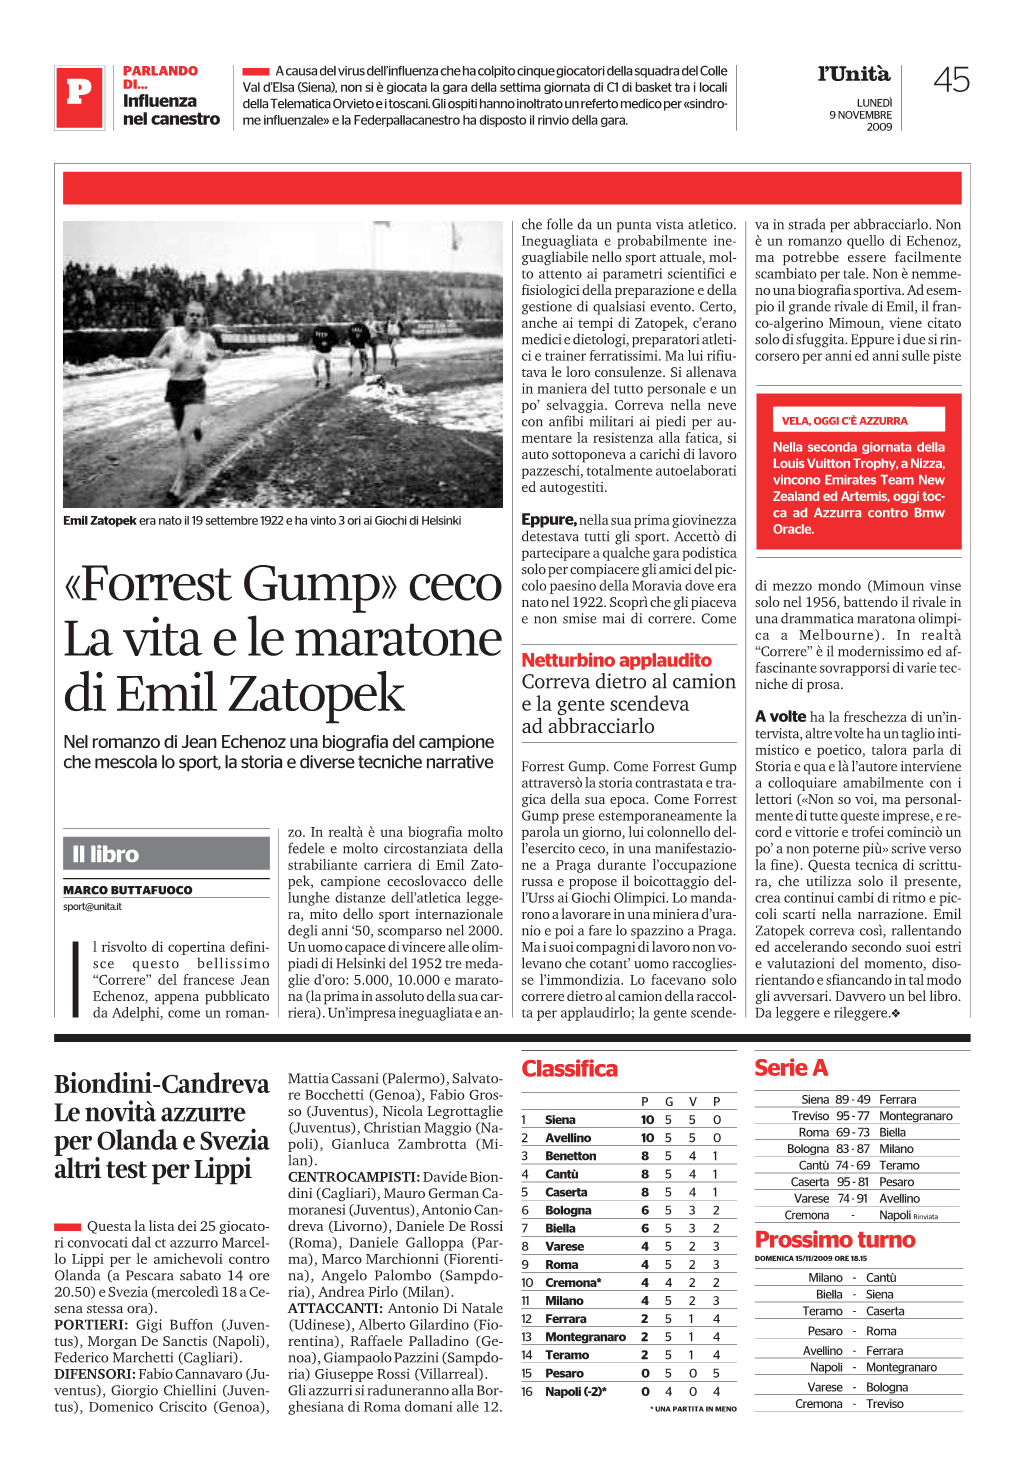 «Forrest Gump» Ceco La Vita E Le Maratone Di Emil Zatopek